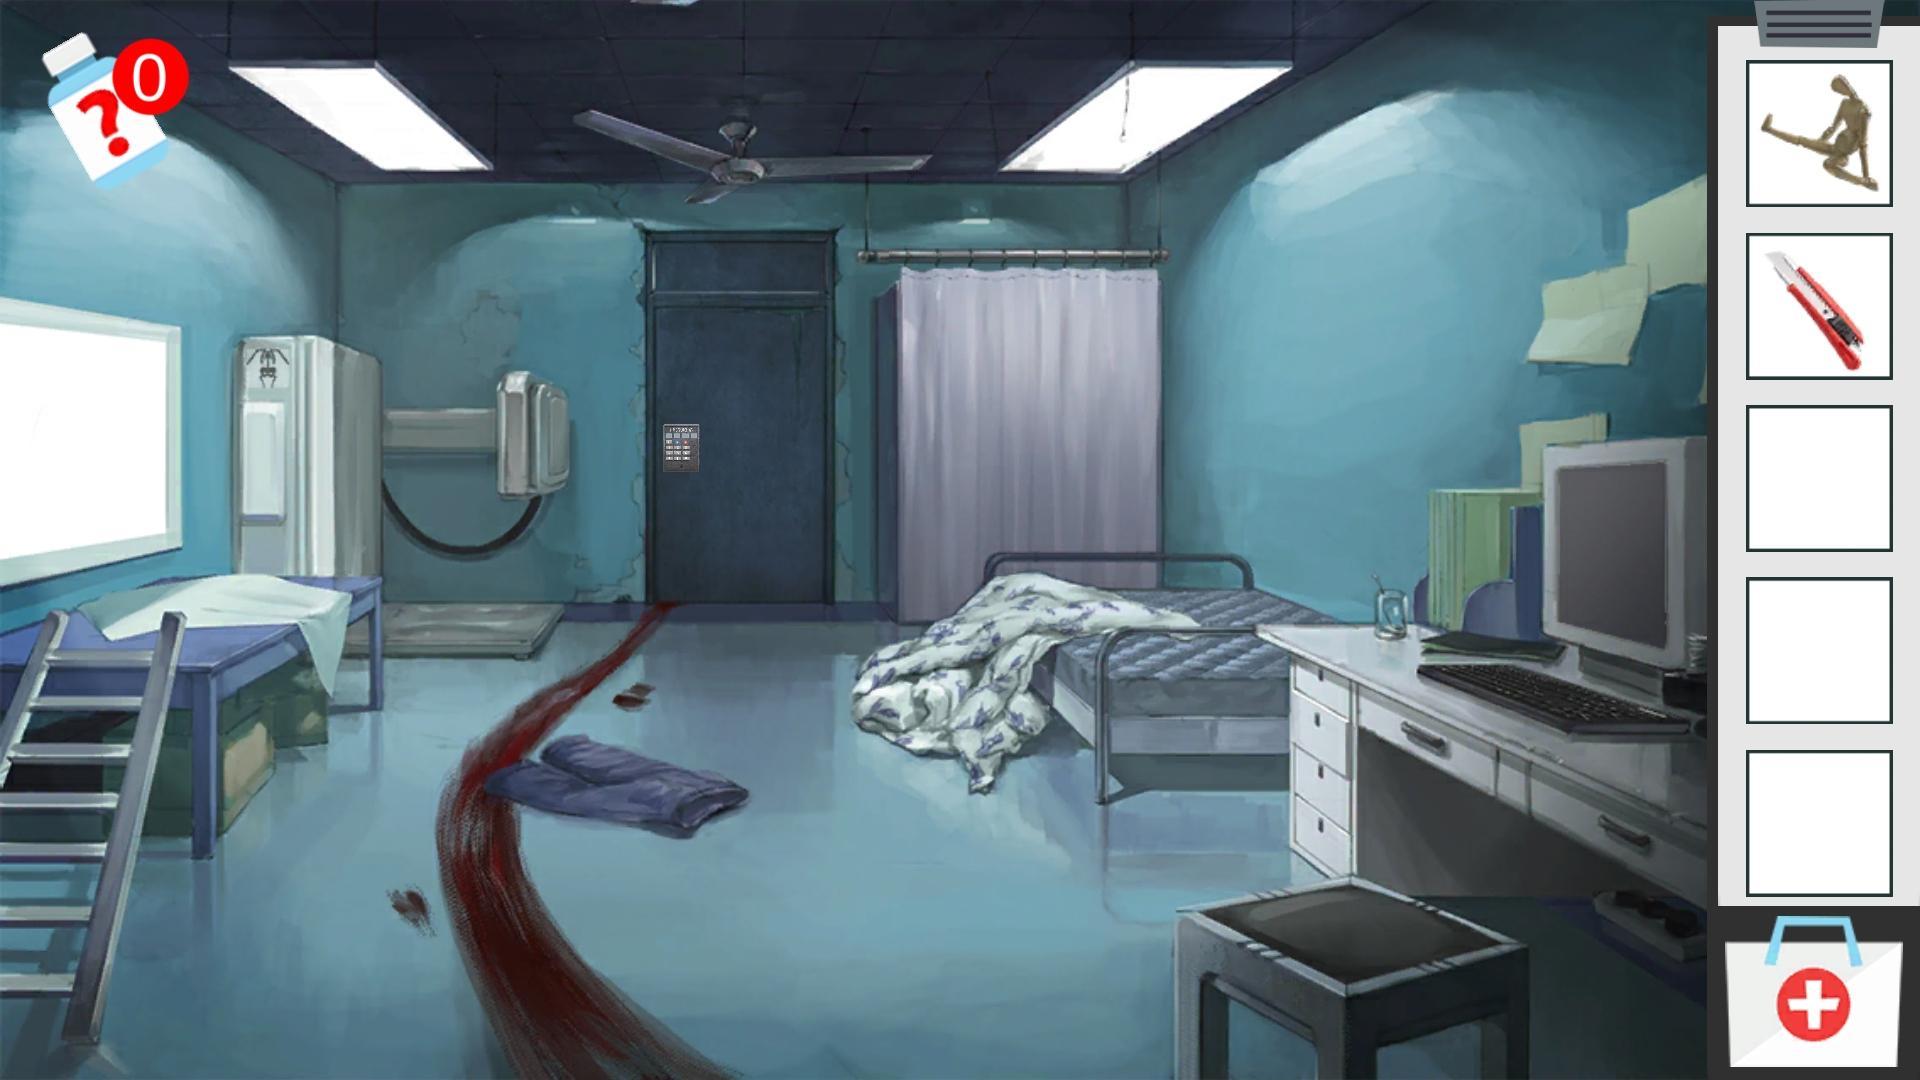 Android 用の 病院部屋脱出 簡単推理謎解きゲーム 脱獄げーむ人気新作無料 Apk をダウンロード